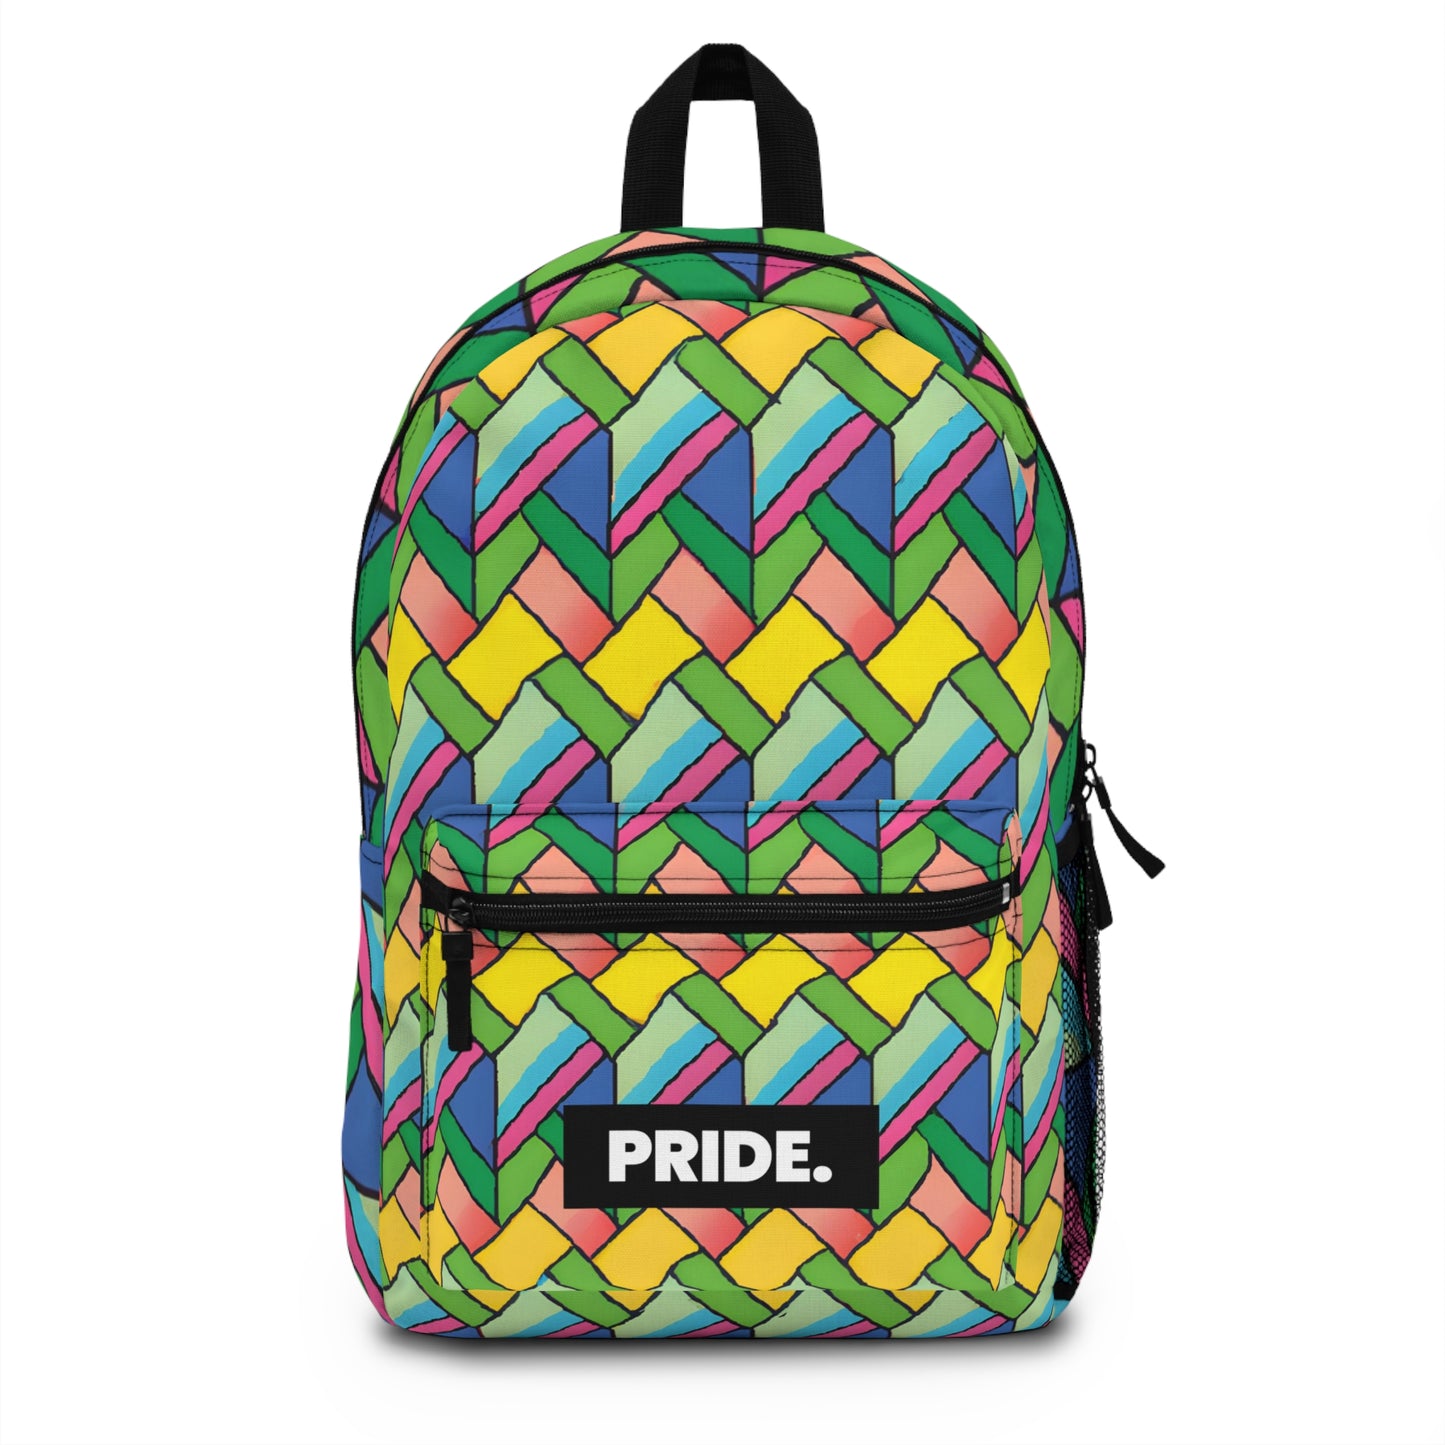 AstraJuno - Hustler Pride Backpack